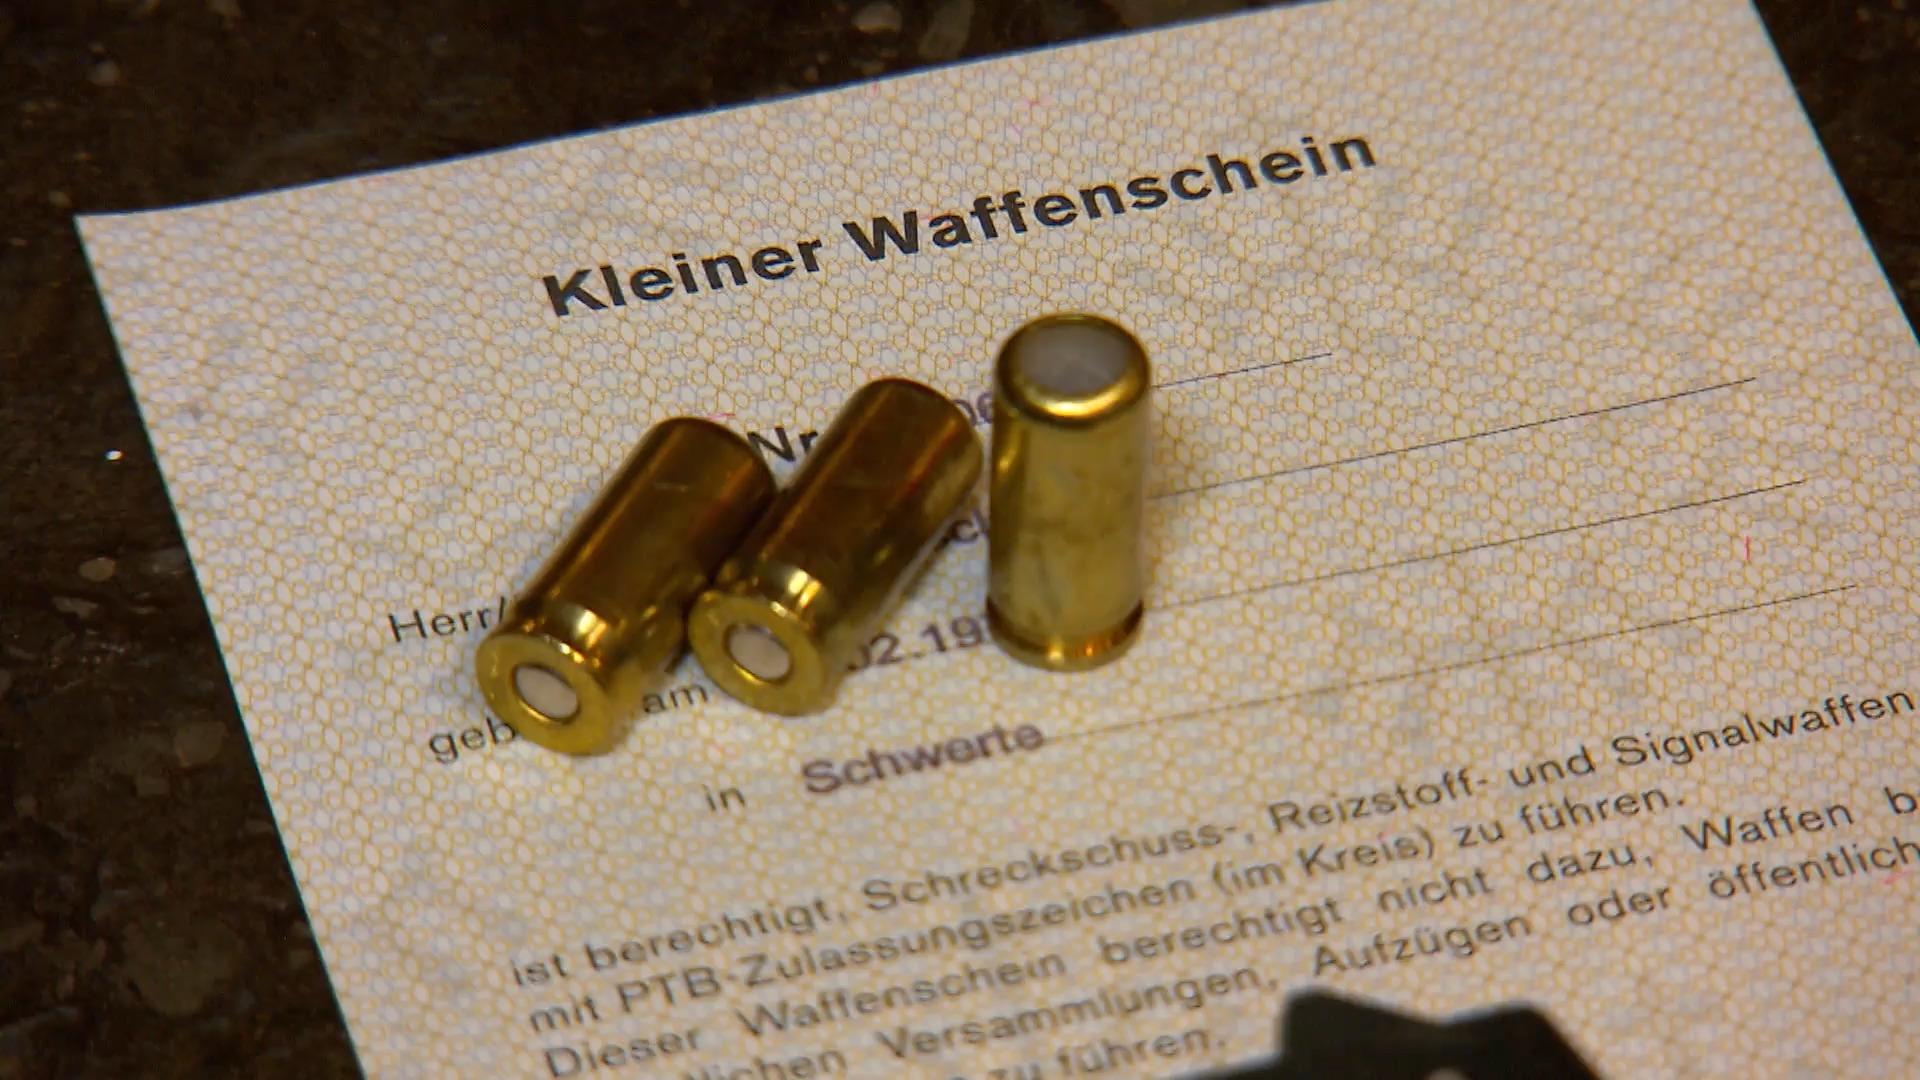 Darum bewaffnen sich die Deutschen zunehmend Anträge auf Kleinen Waffenschein auf Rekordhoch